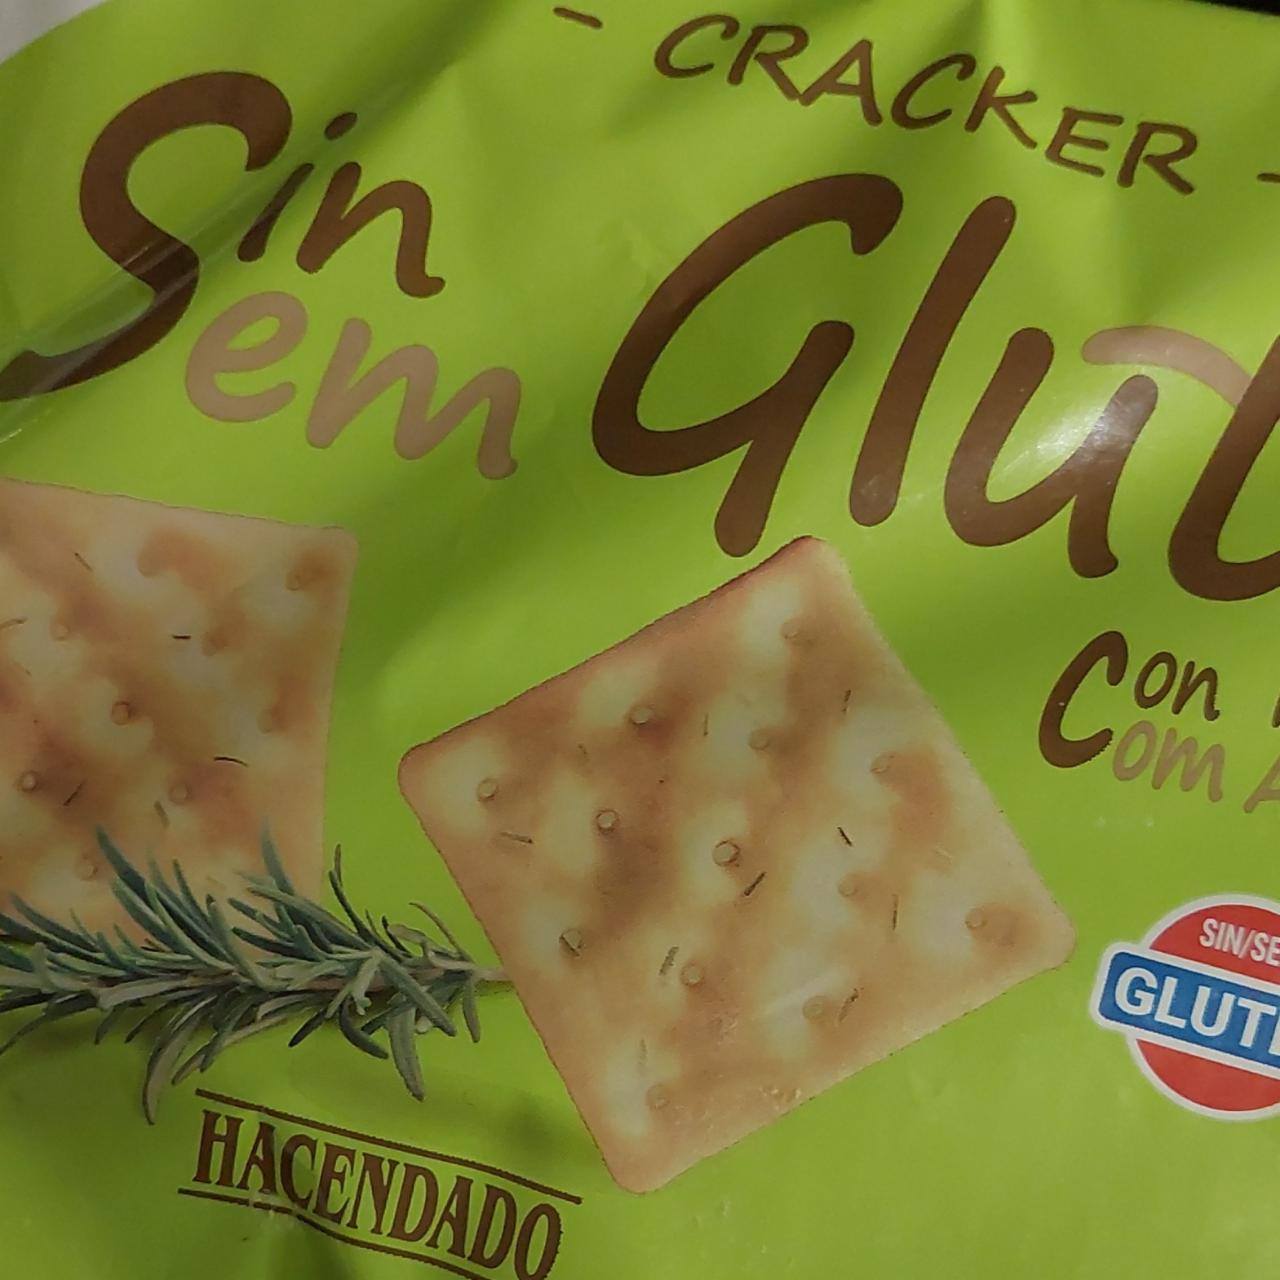 Fotografie - Crackers sin gluten con romero Hacendado